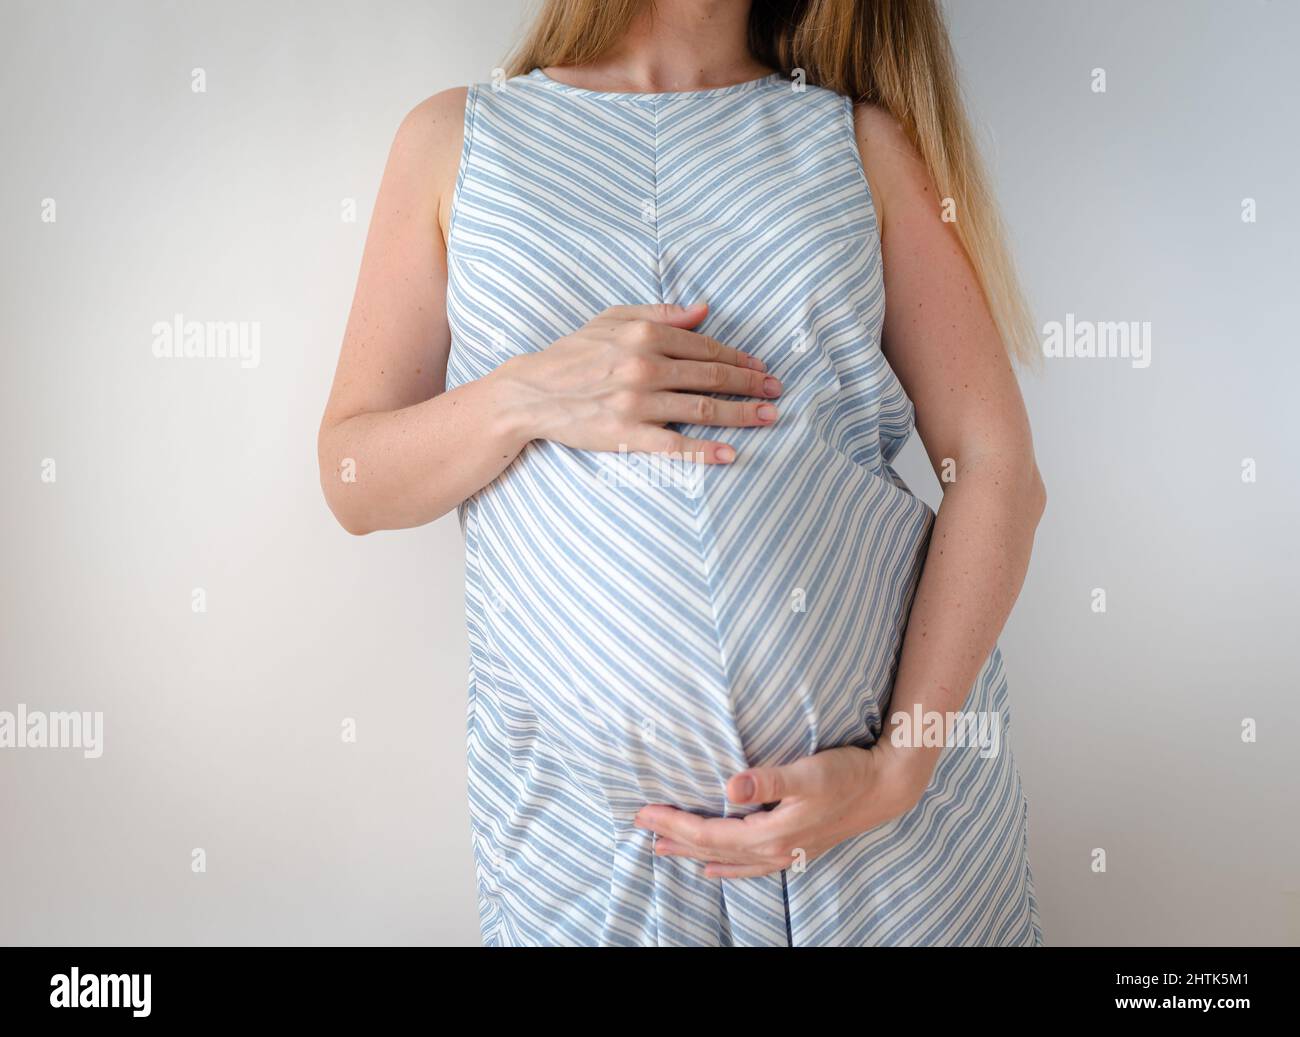 una donna incinta in un abito blu con una striscia bianca, si erge su uno sfondo bianco e tiene le mani sul suo stomaco, il concetto di aspettarsi un Foto Stock